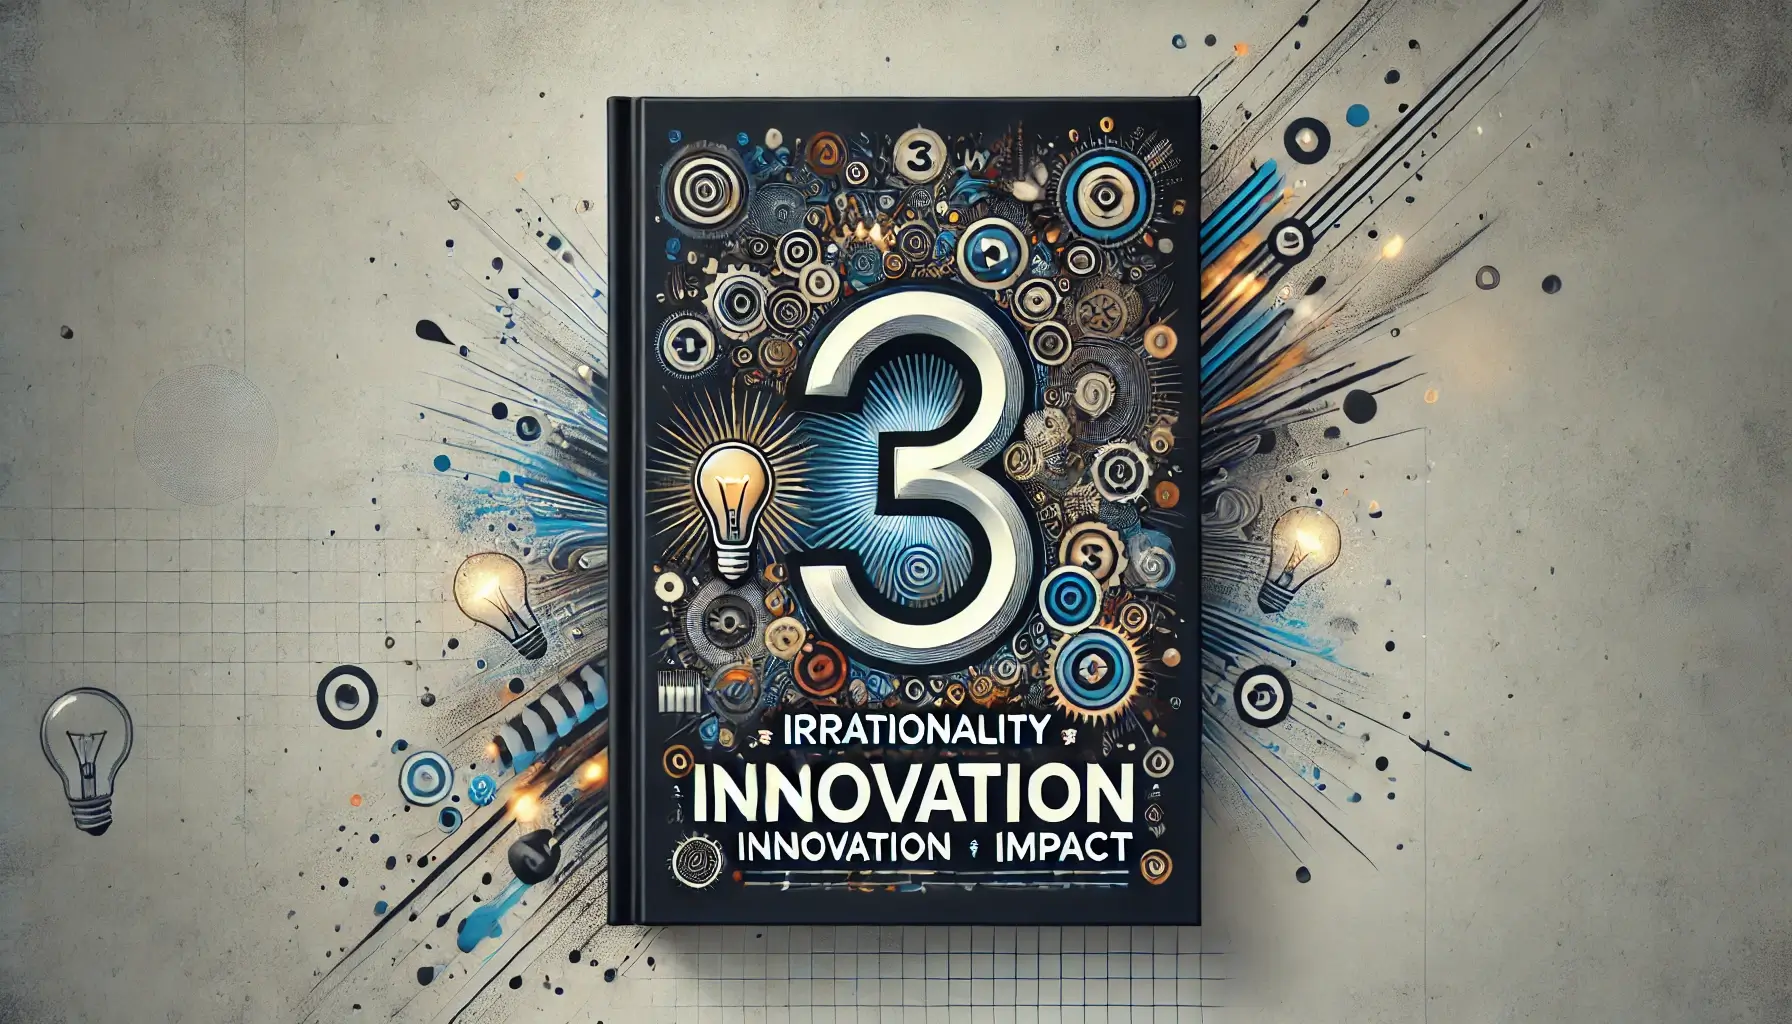 I³ : Innovation × Irrationality = Impact